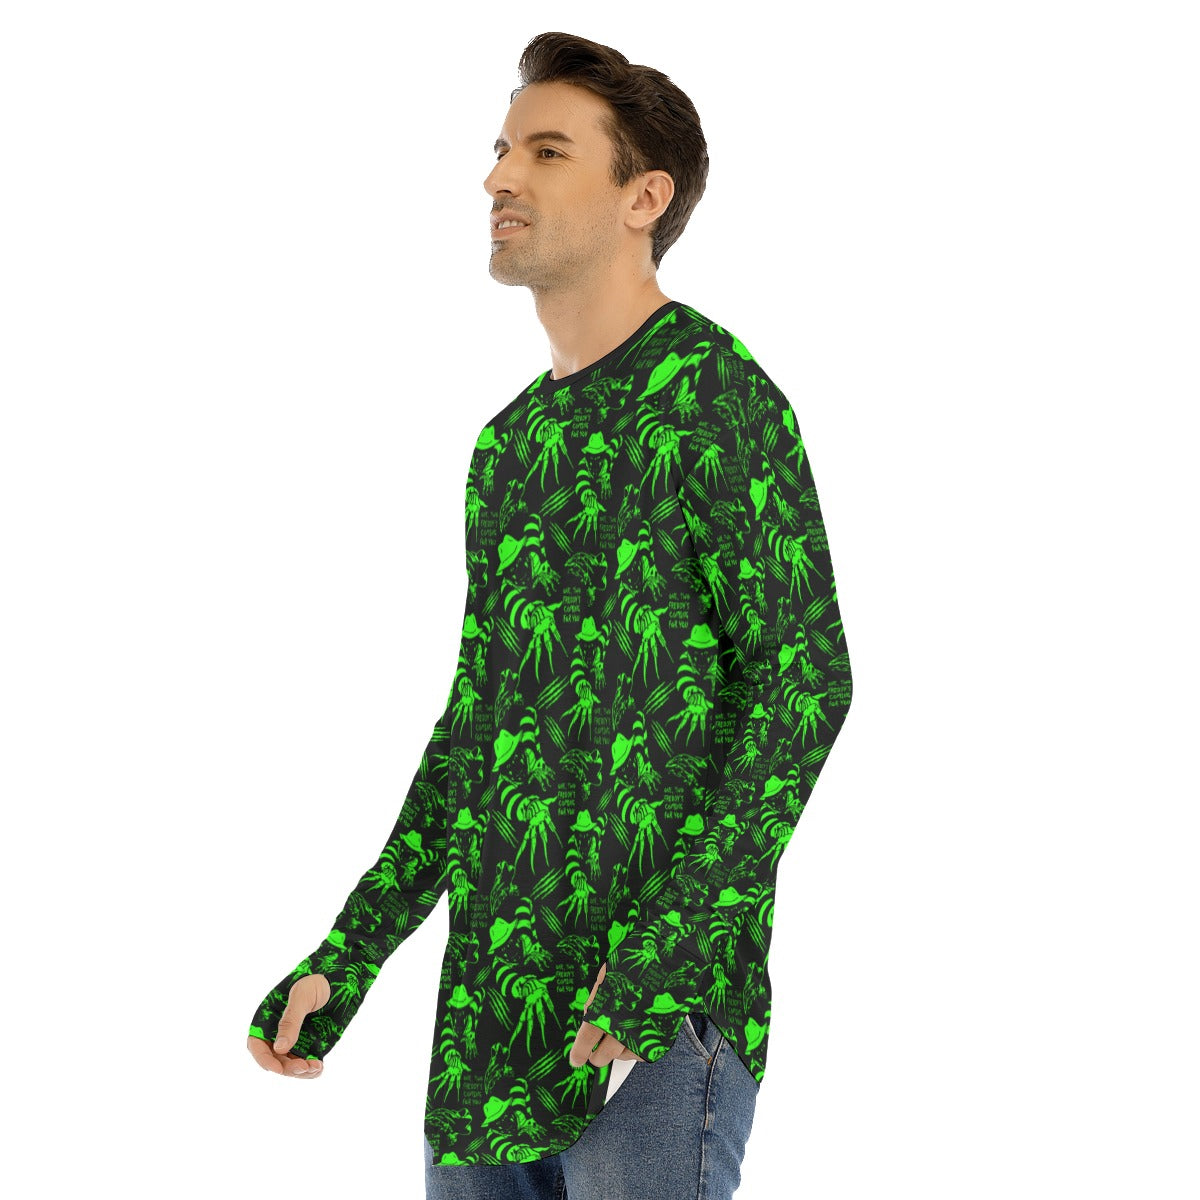 Neon Green Freddy Fingerless Long Sleeve T-shirt spookydoll